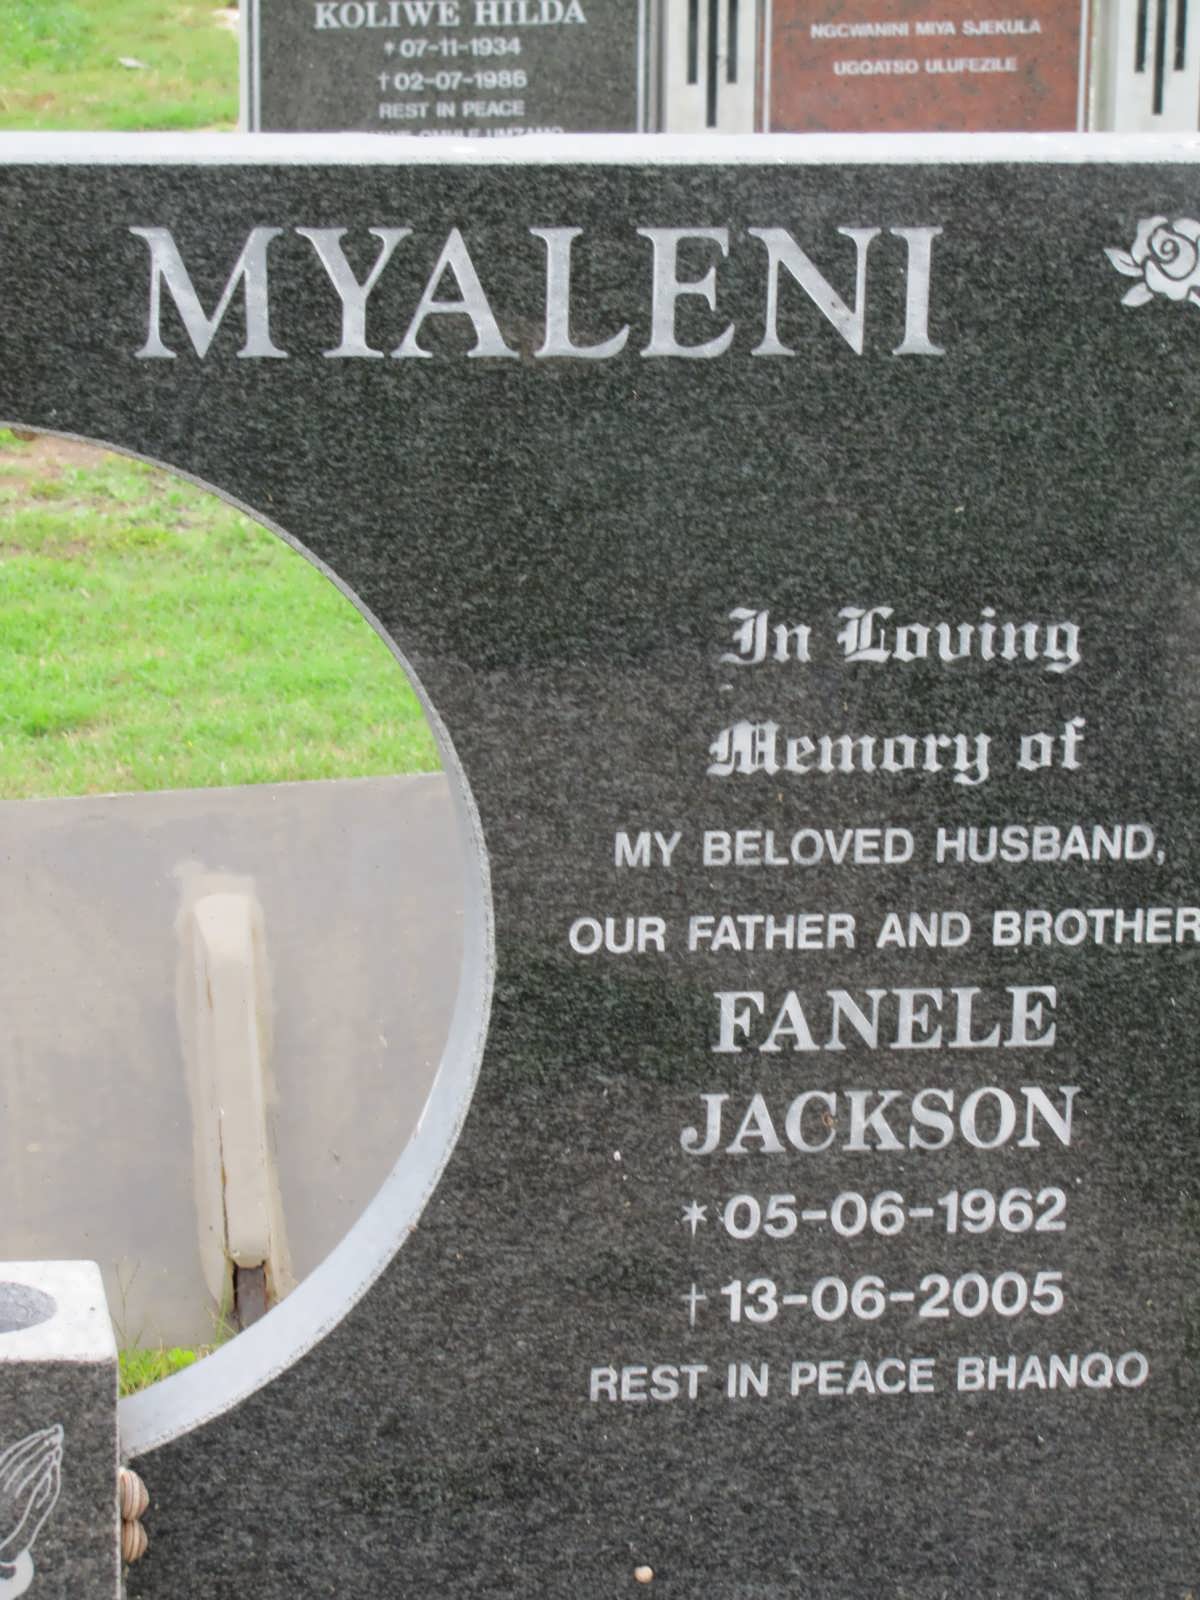 MYALENI Fanele Jackson 1962-2005